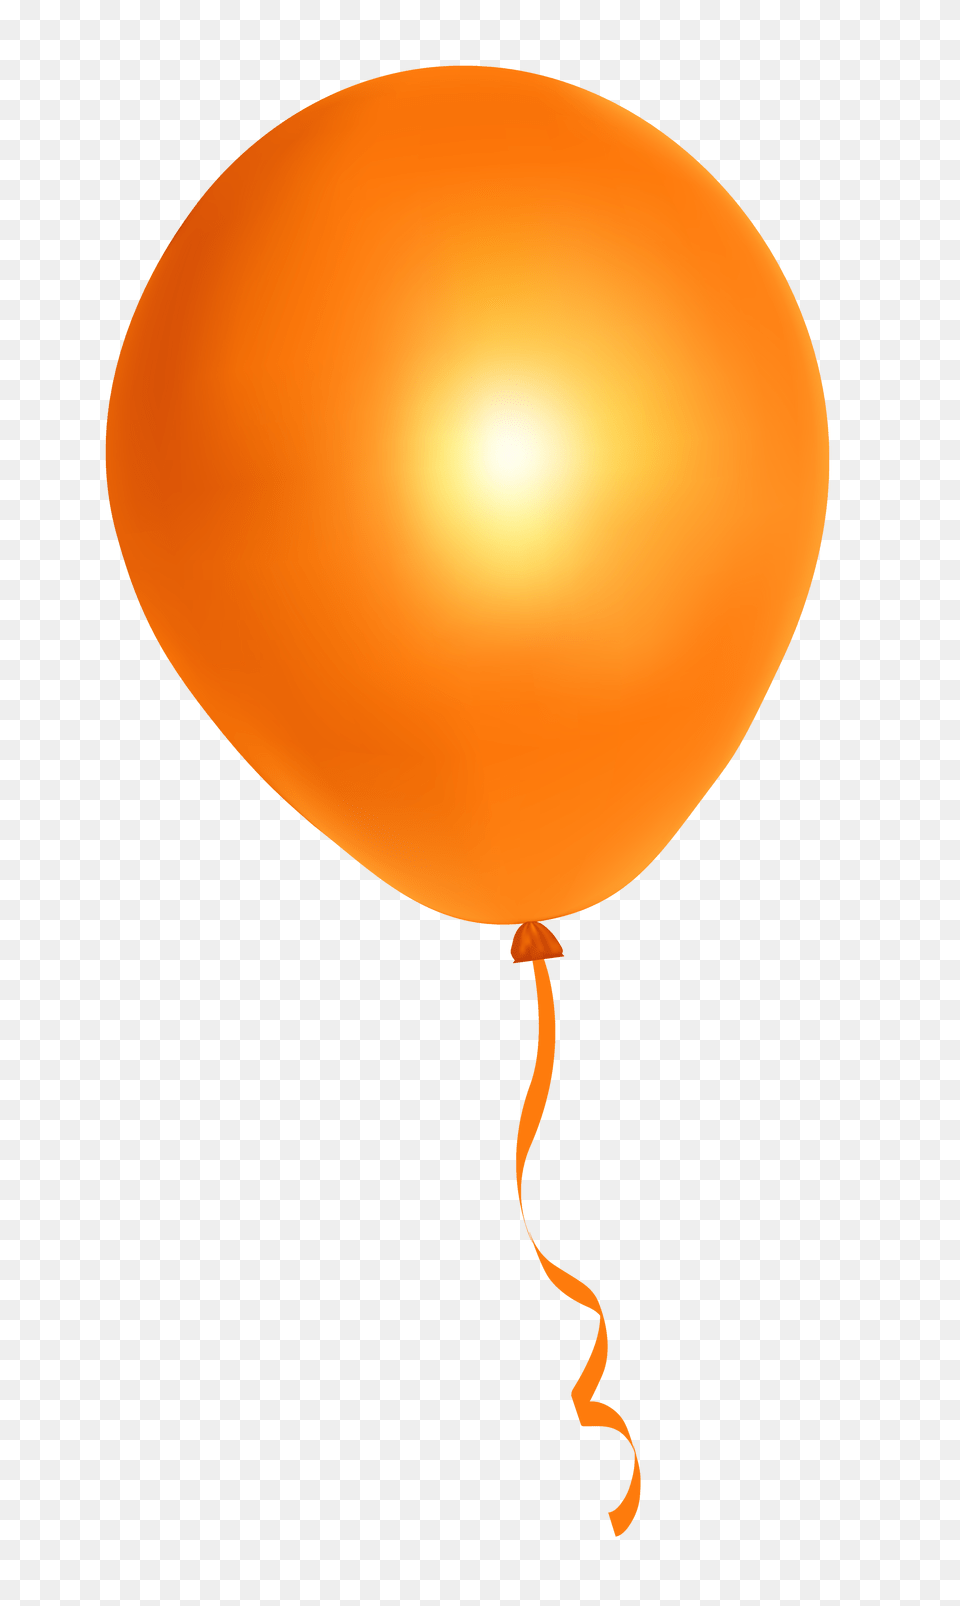 Pngpix Com Orange Balloon Png Image